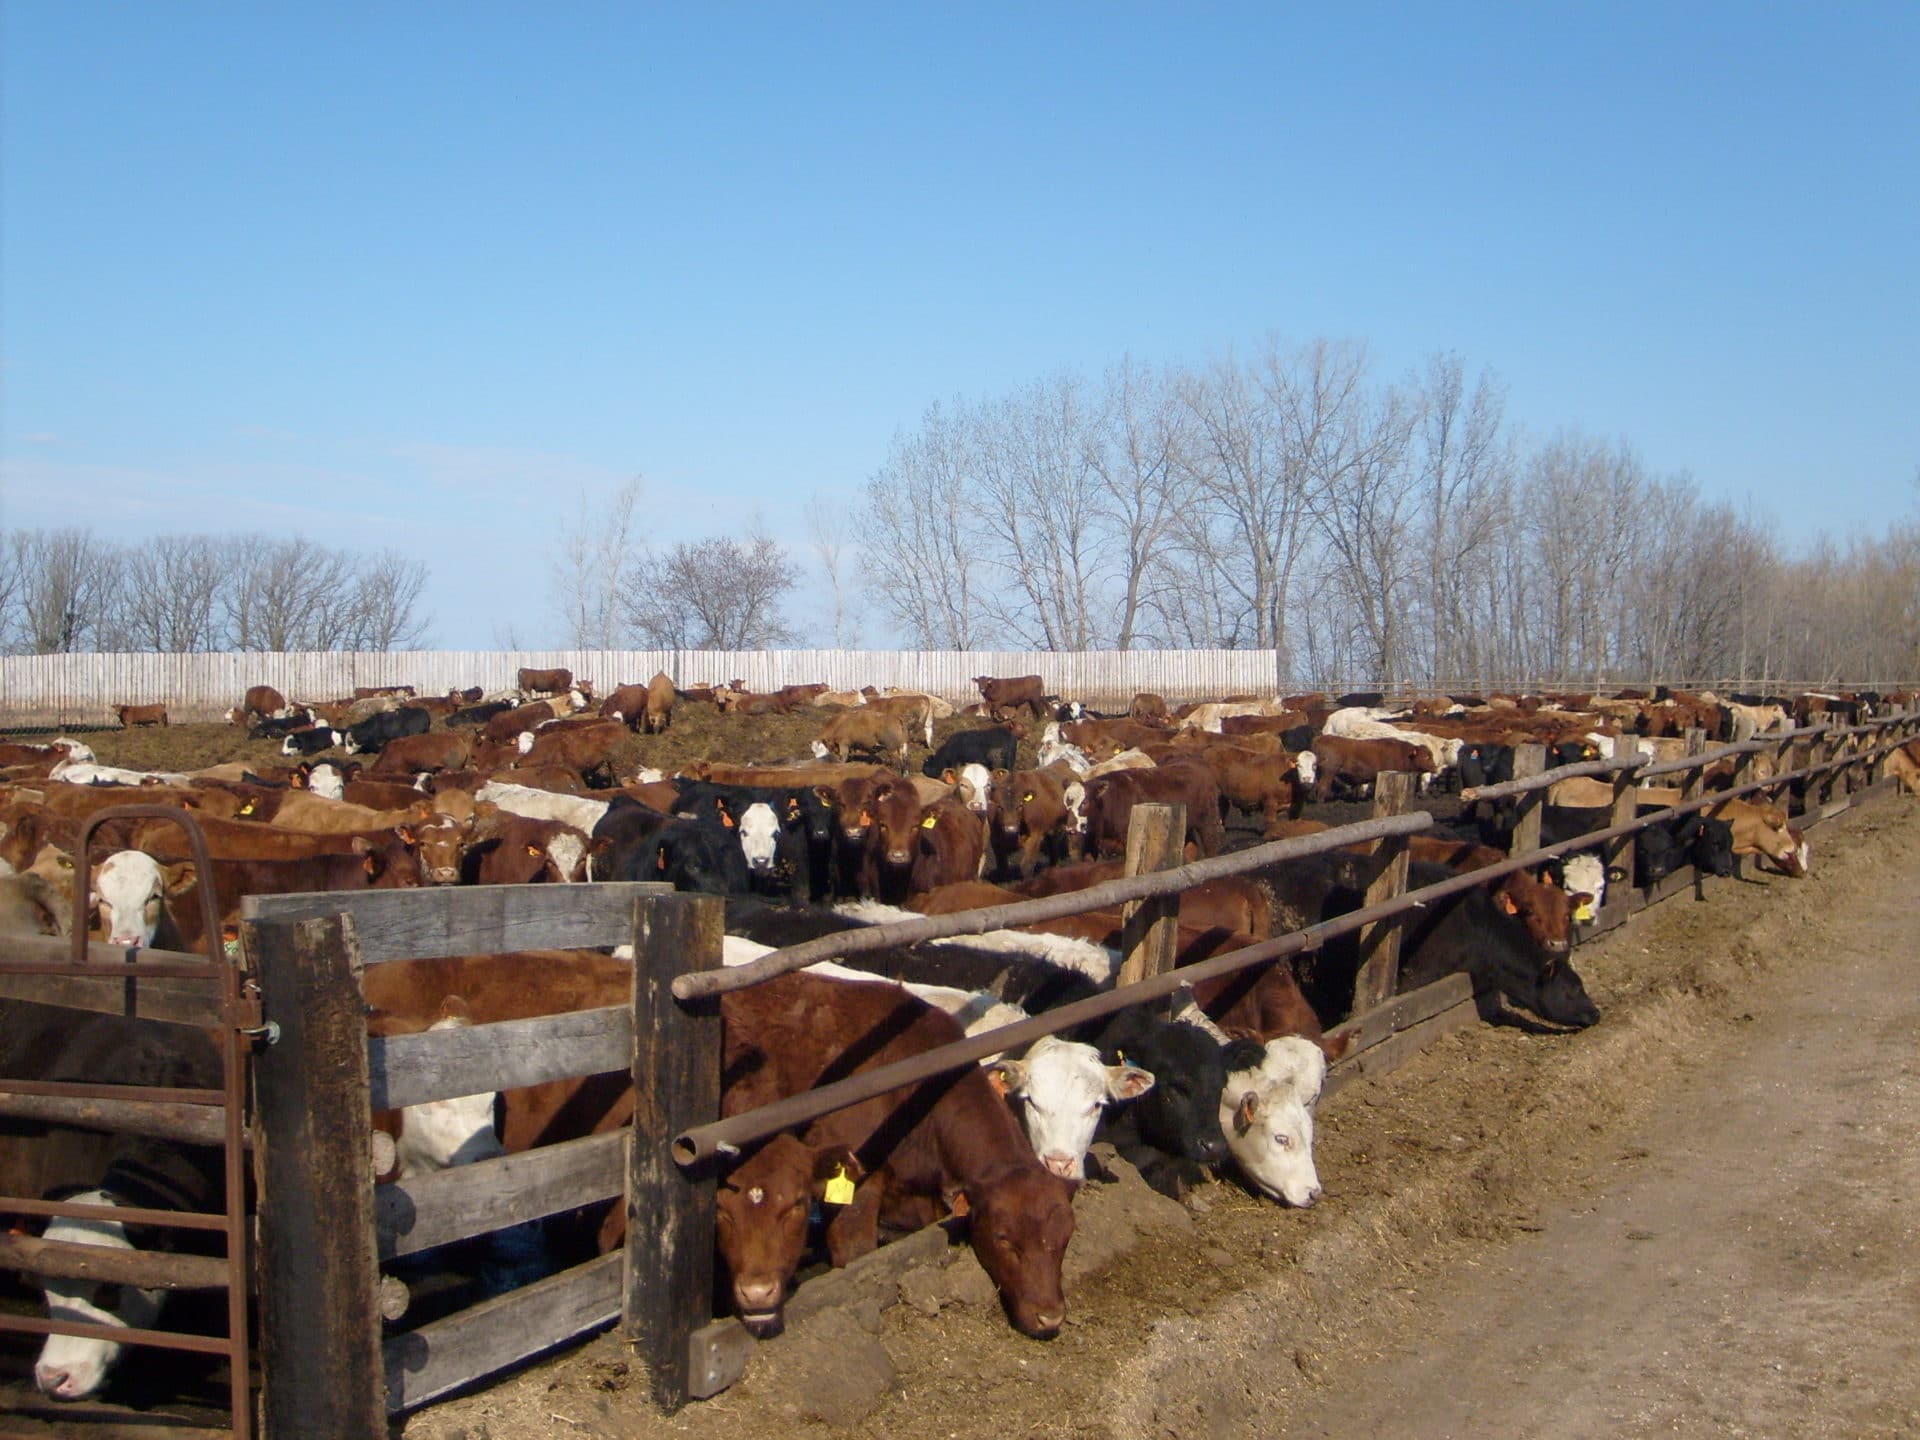 drylotting cattle in summer